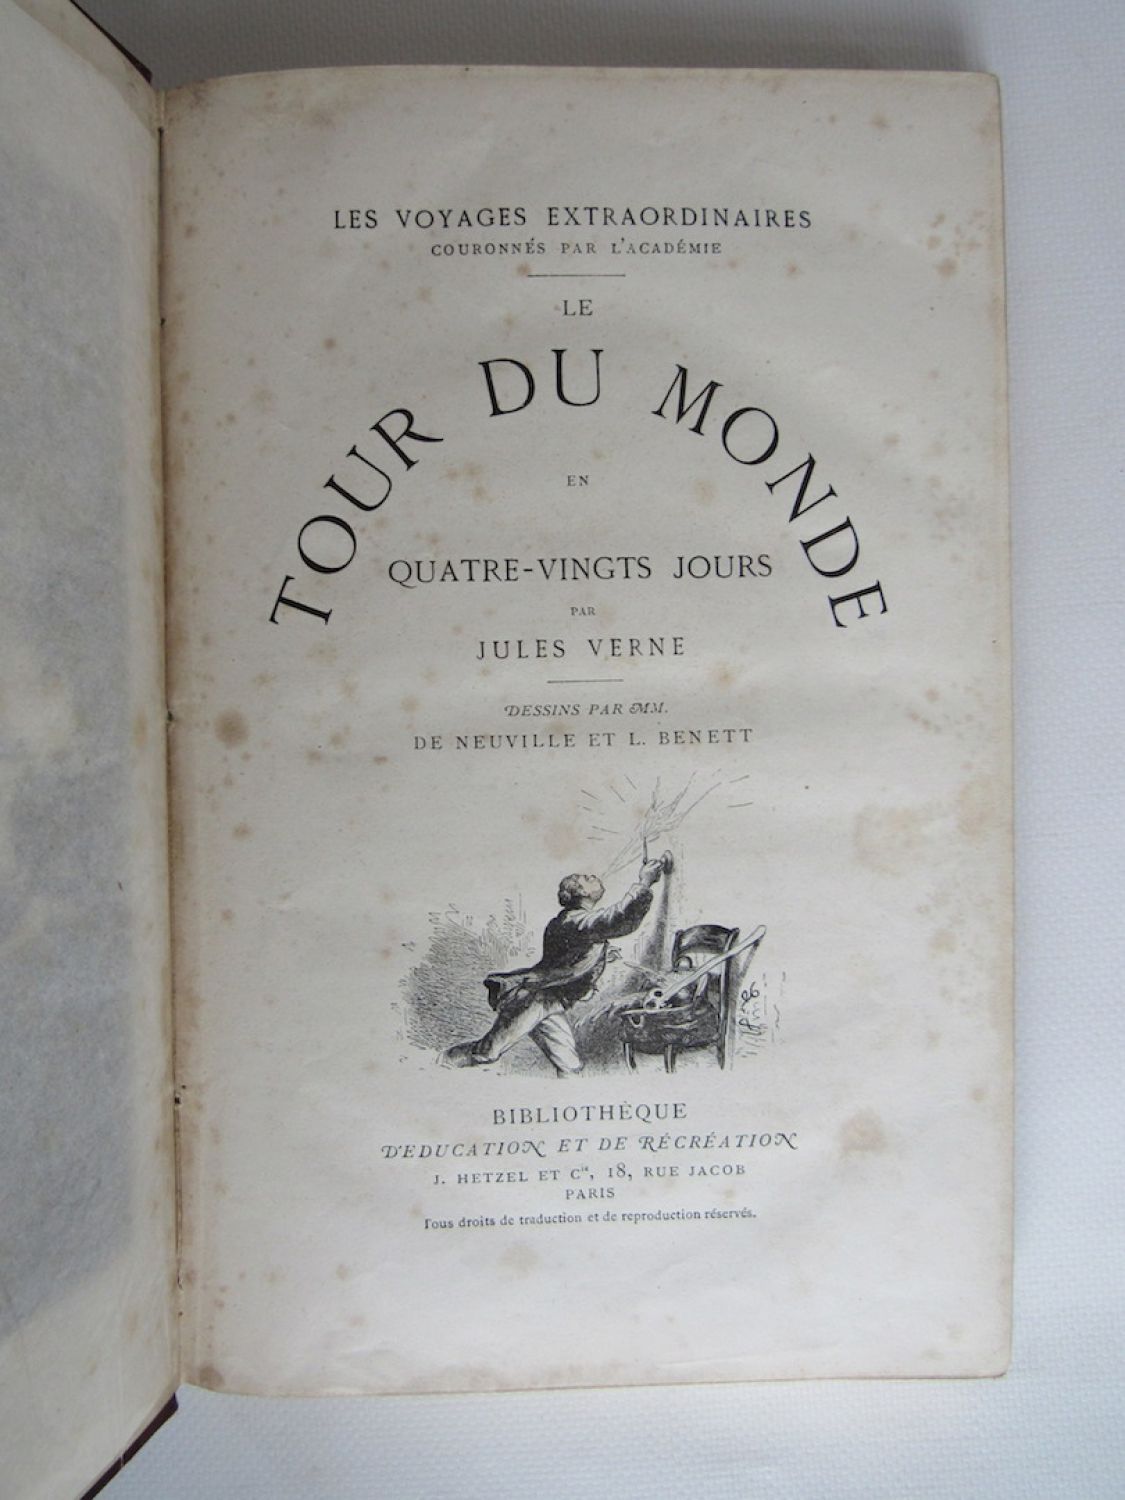 Le Tour du monde en 80 jours, Jules Verne, Hetzel, 1898